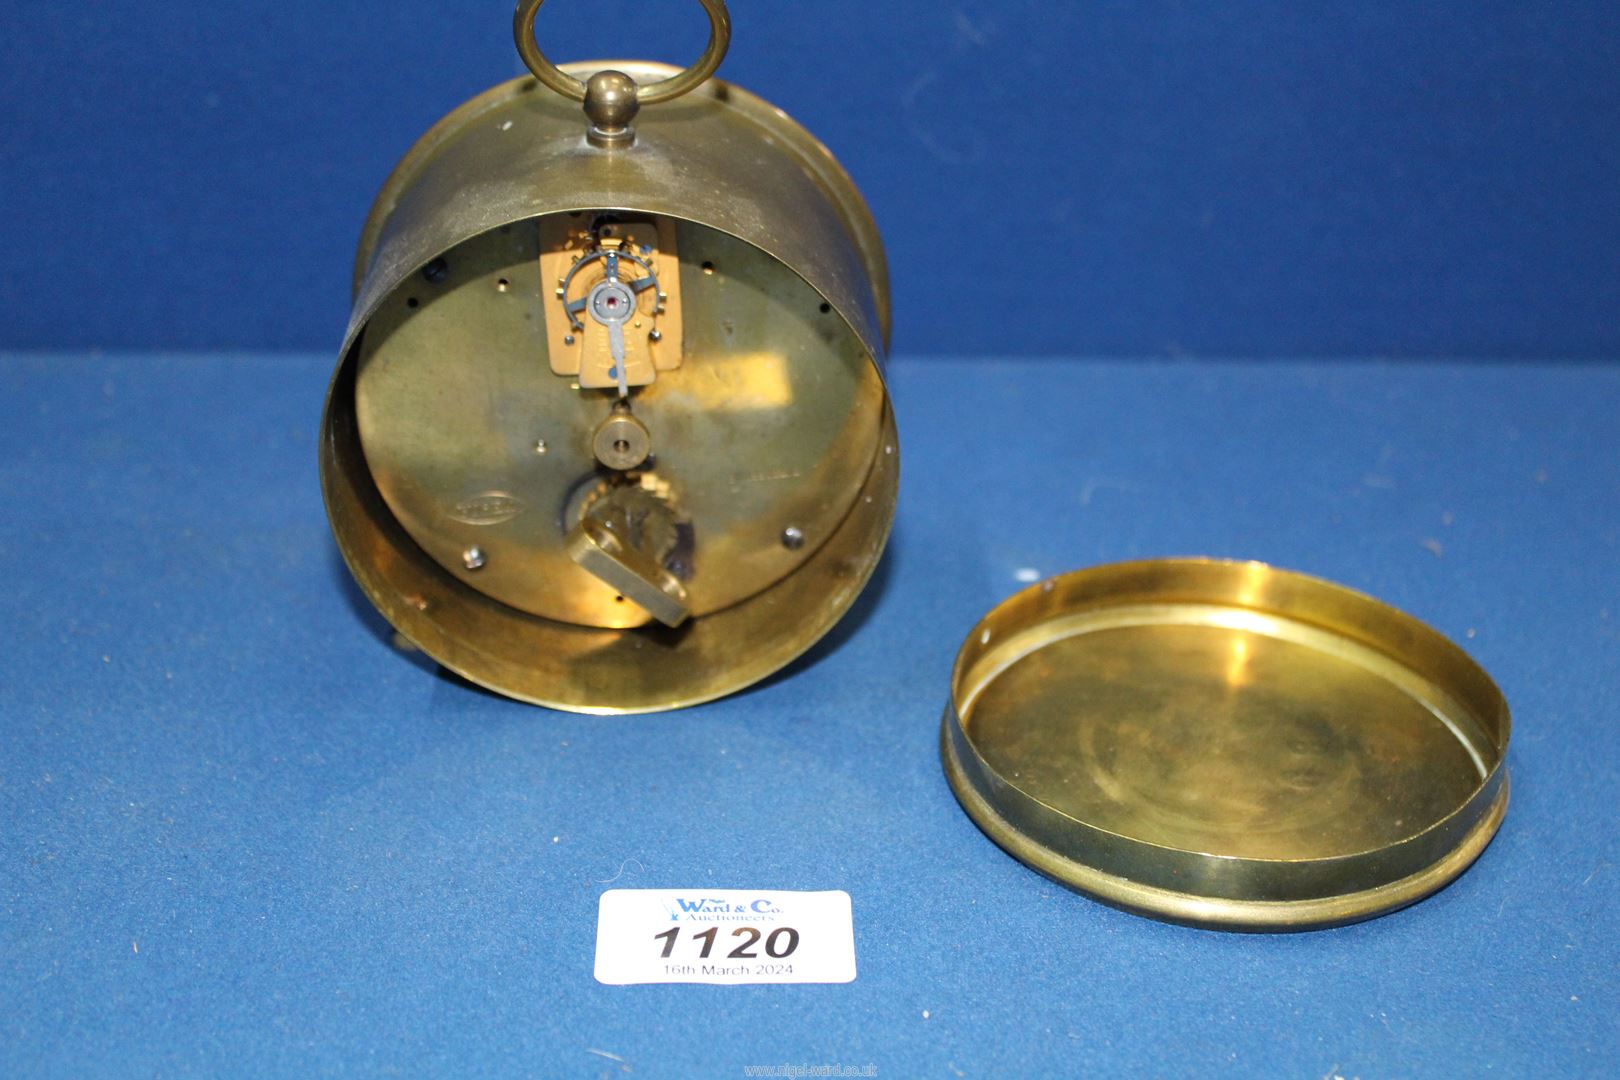 A circular brass drum Railway clock having white enamel face, - Image 2 of 3